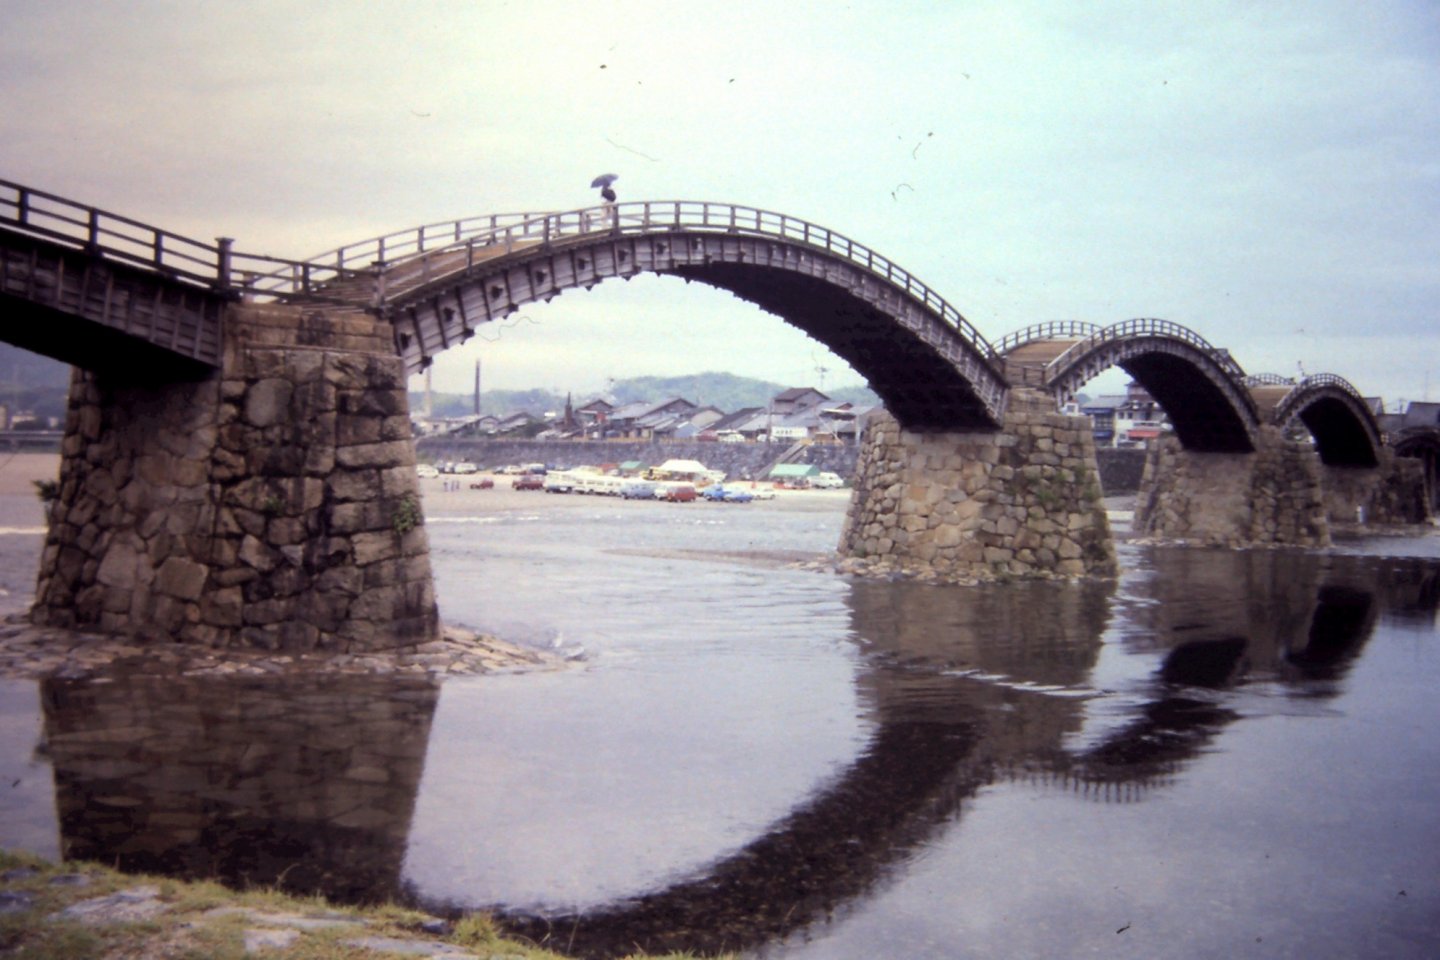 Kintai Bridge is a five-span arch bridge.